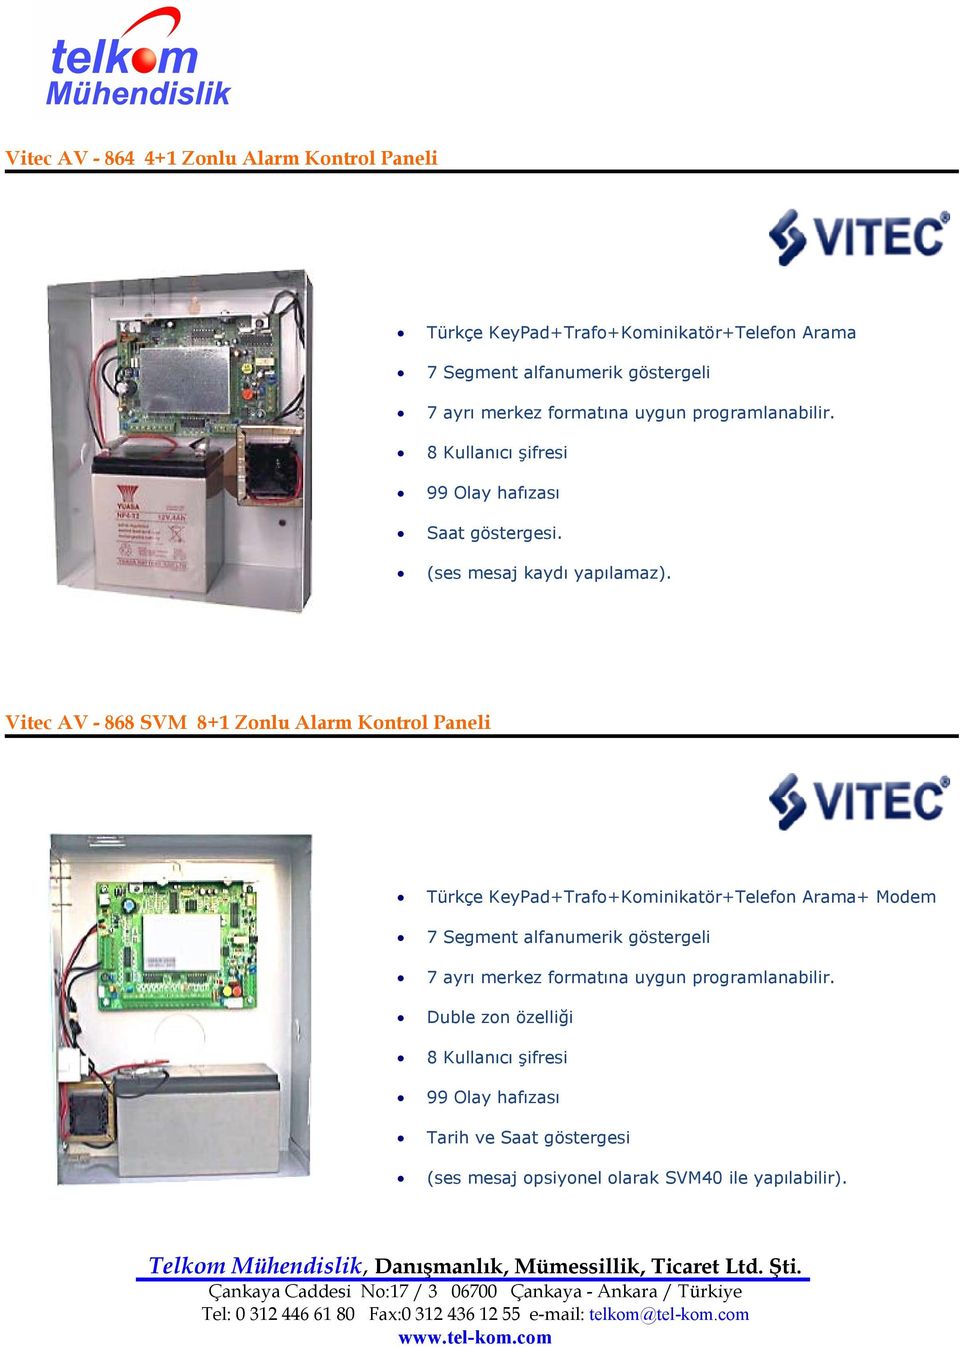 Vitec AV - 868 SVM 8+1 Zonlu Alarm Kontrol Paneli Türkçe KeyPad+Trafo+Kominikatör+Telefon Arama+ Modem 7 Segment alfanumerik göstergeli 7 ayrı